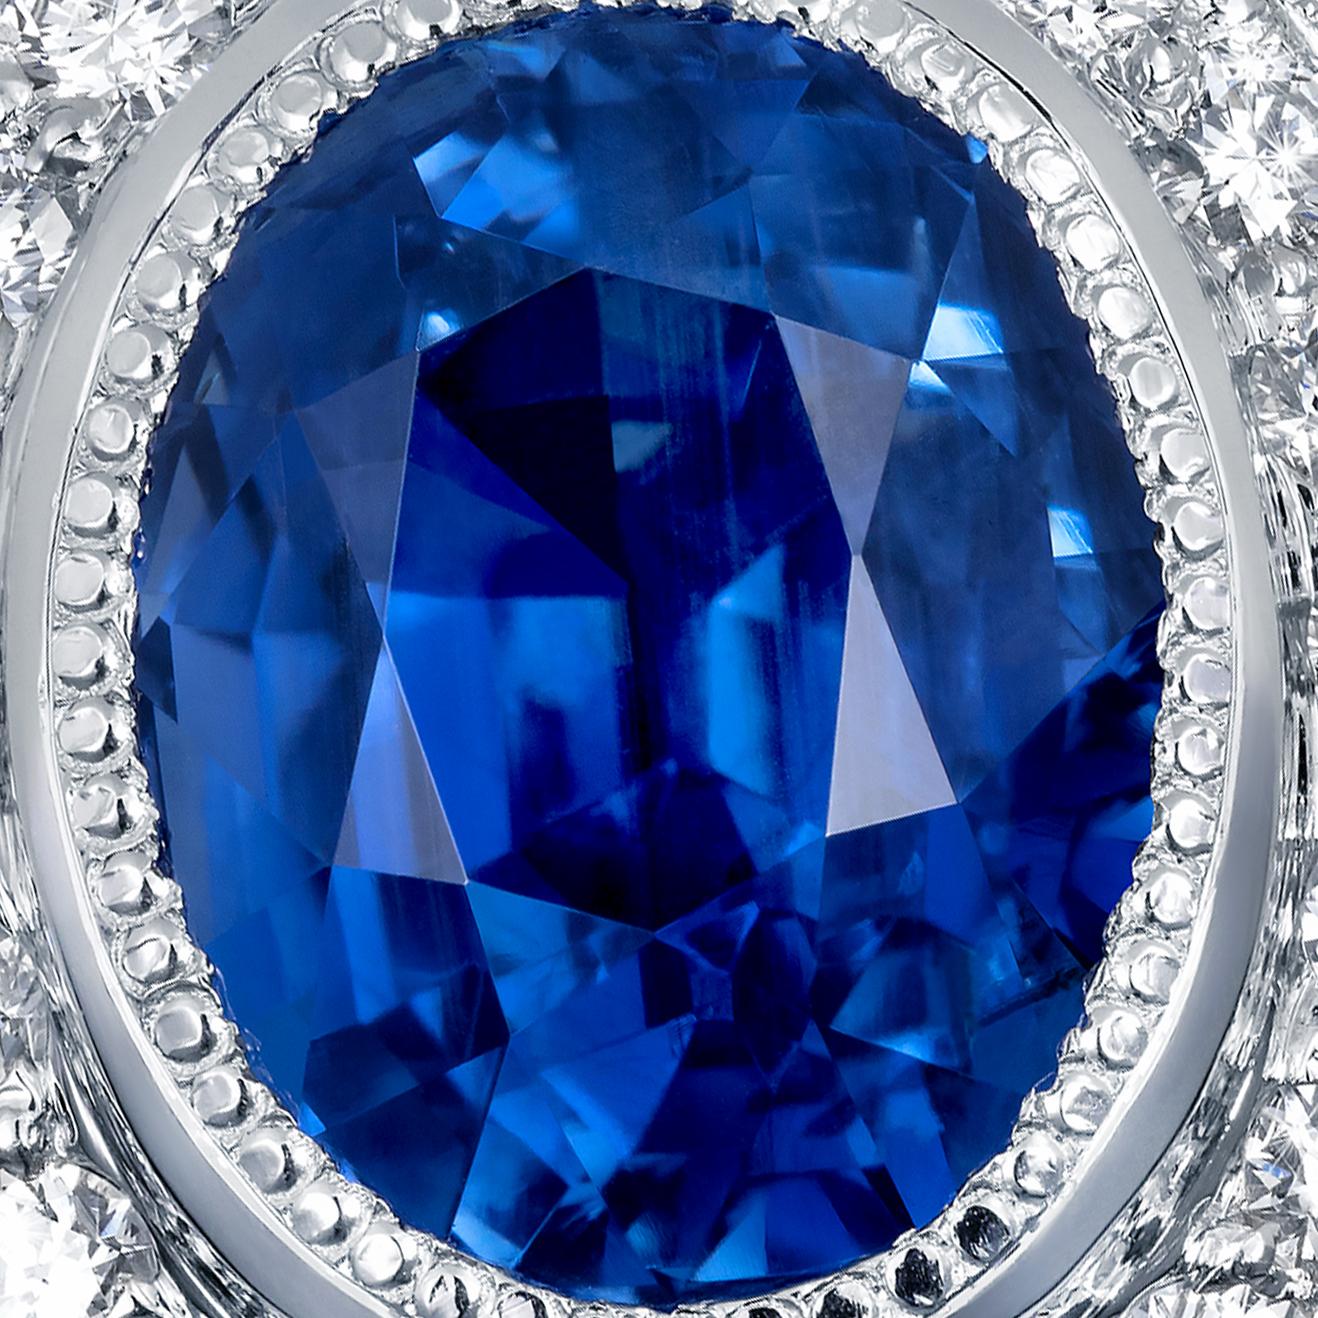 Un magnifique saphir ovale bleu royal est serti parmi des diamants dans cette monture unique de style Régal avec un bord perlé. Cette exquise bague en saphir et diamant présente un saphir bleu royal de forme ovale de 3,61 carats entouré d'un joli